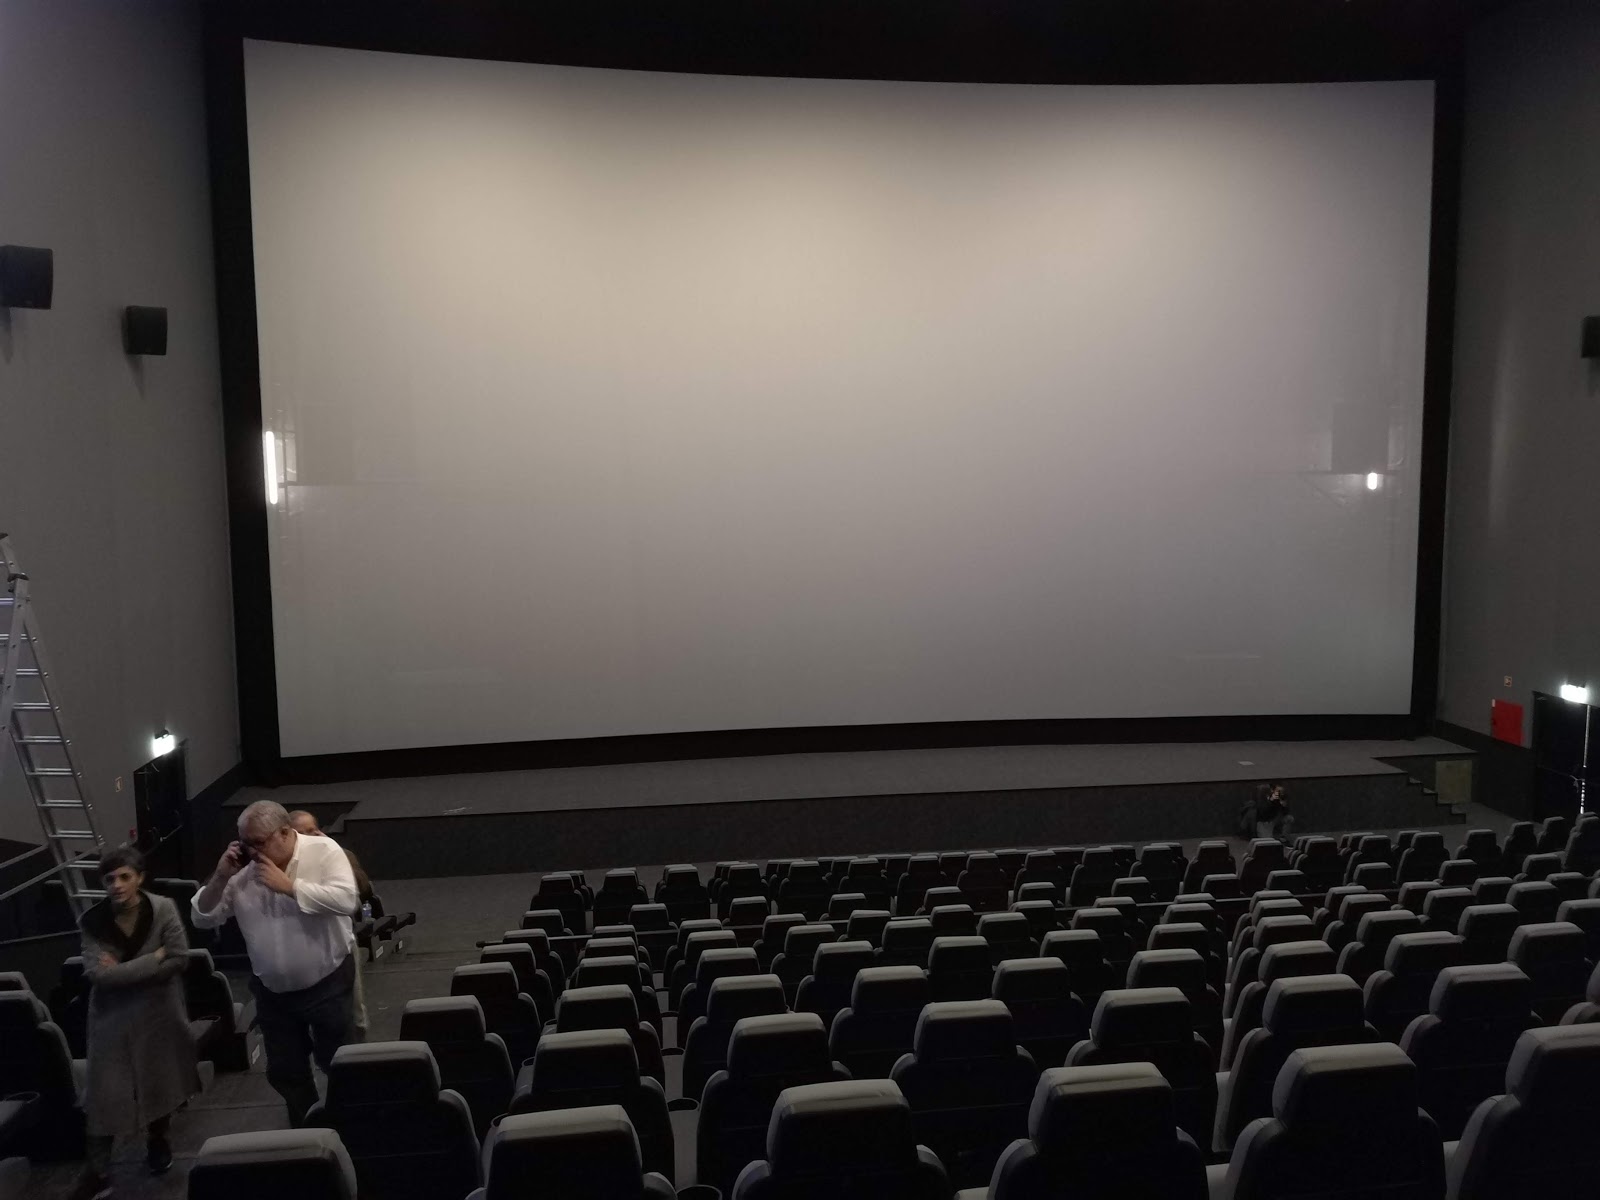 A experiência de Diogo na sala ScreenX dos Cinemas NOS